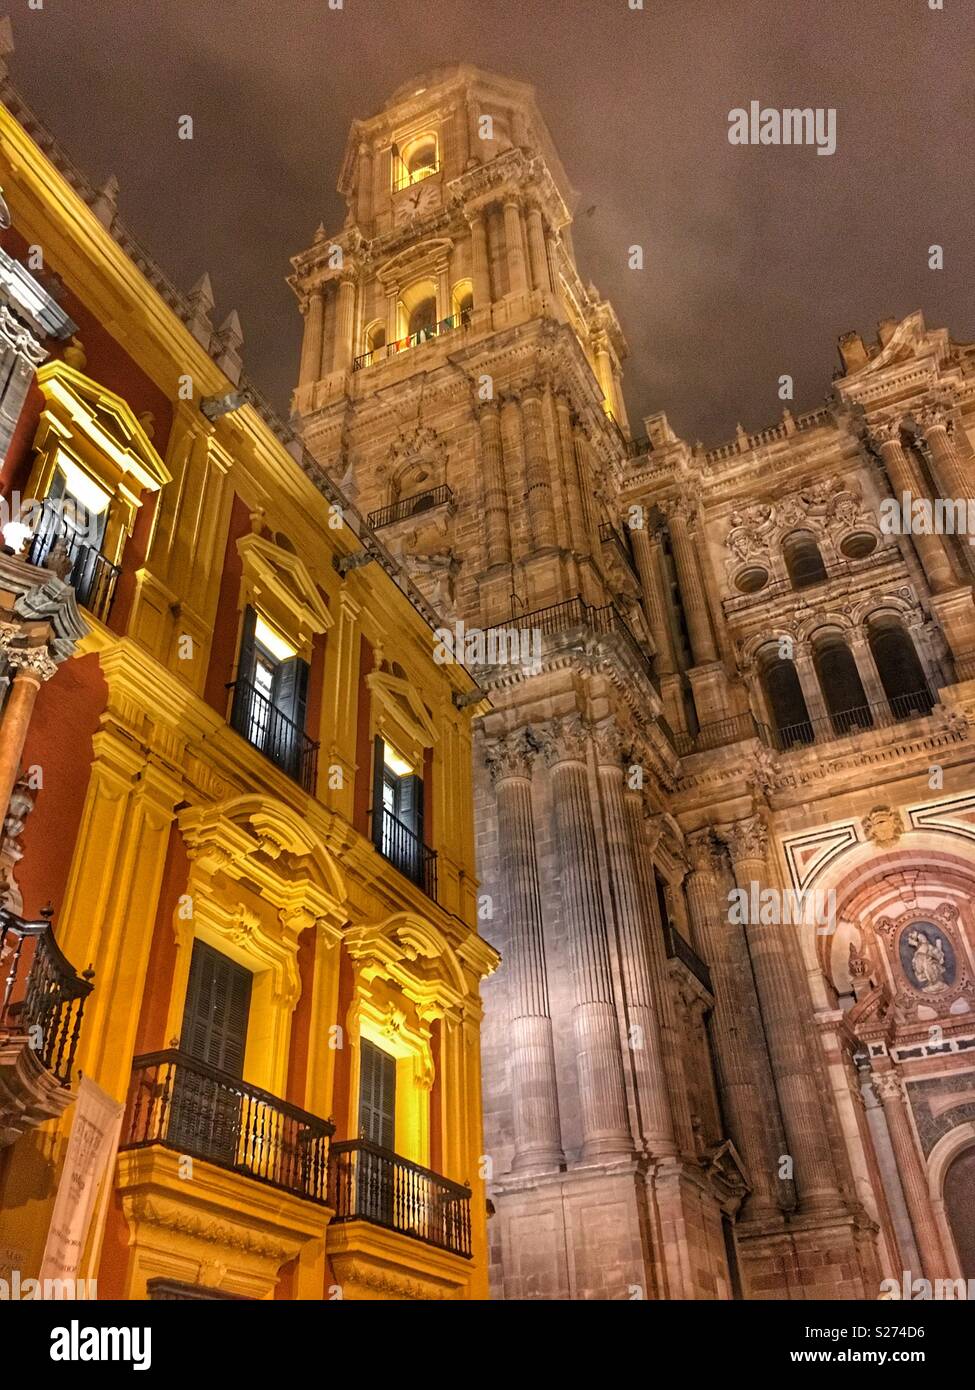 Cattedrale di Malaga, in Spagna. La Cattedrale di Malaga è una chiesa cattolica romana nella città di Malaga in Andalusia in Spagna meridionale. Foto Stock